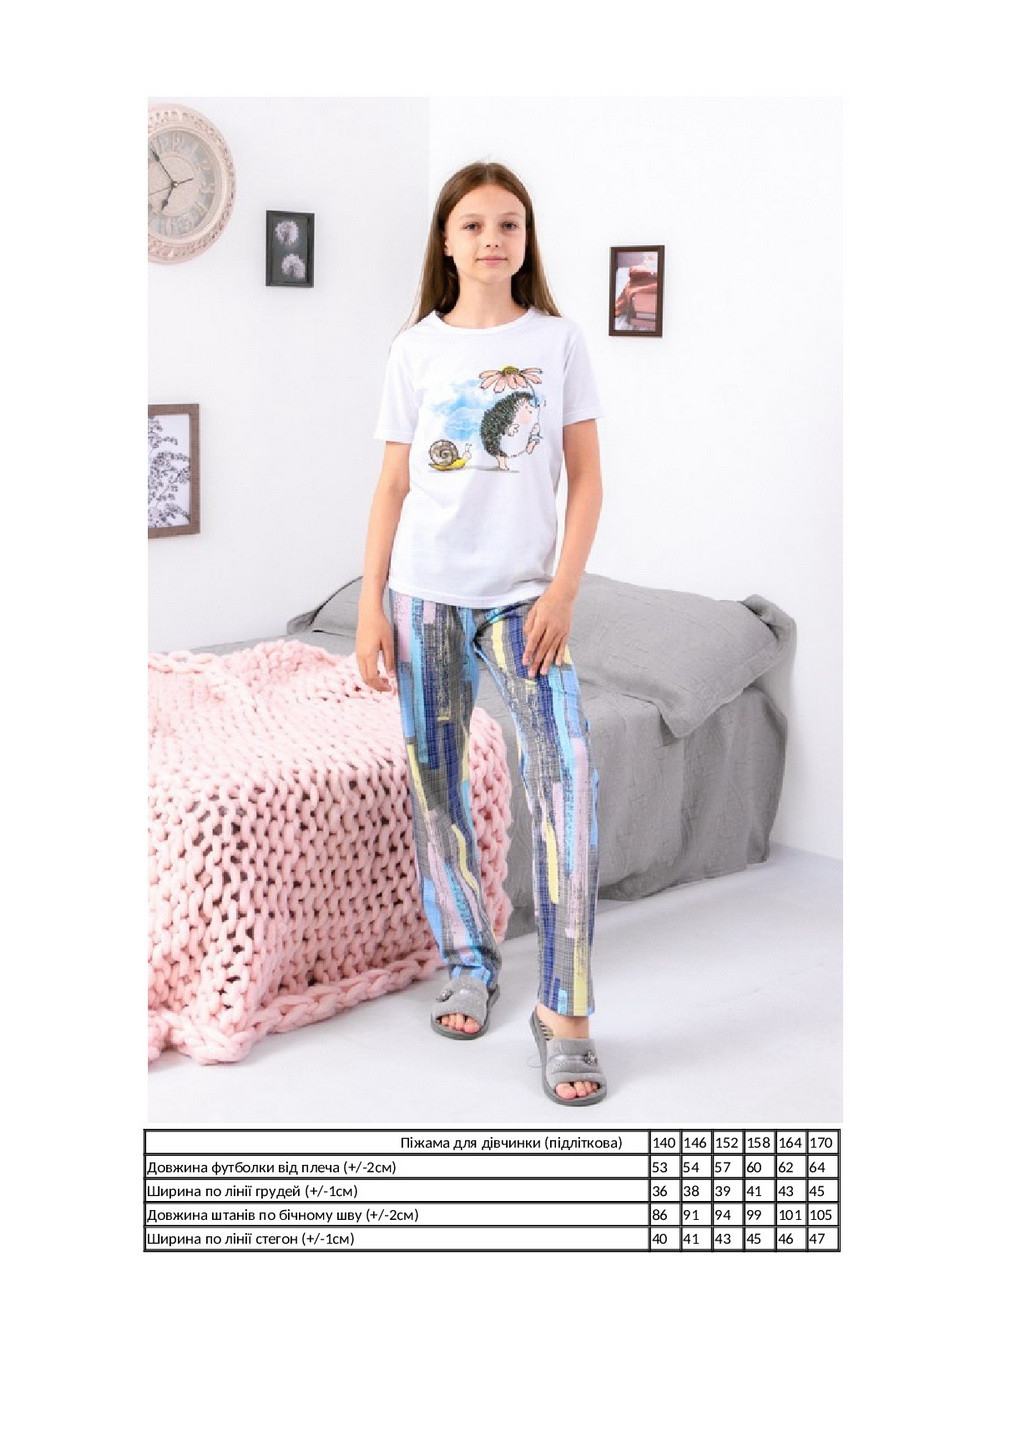 Серая всесезон пижама для девочки (подростковая) футболка + брюки KINDER MODE